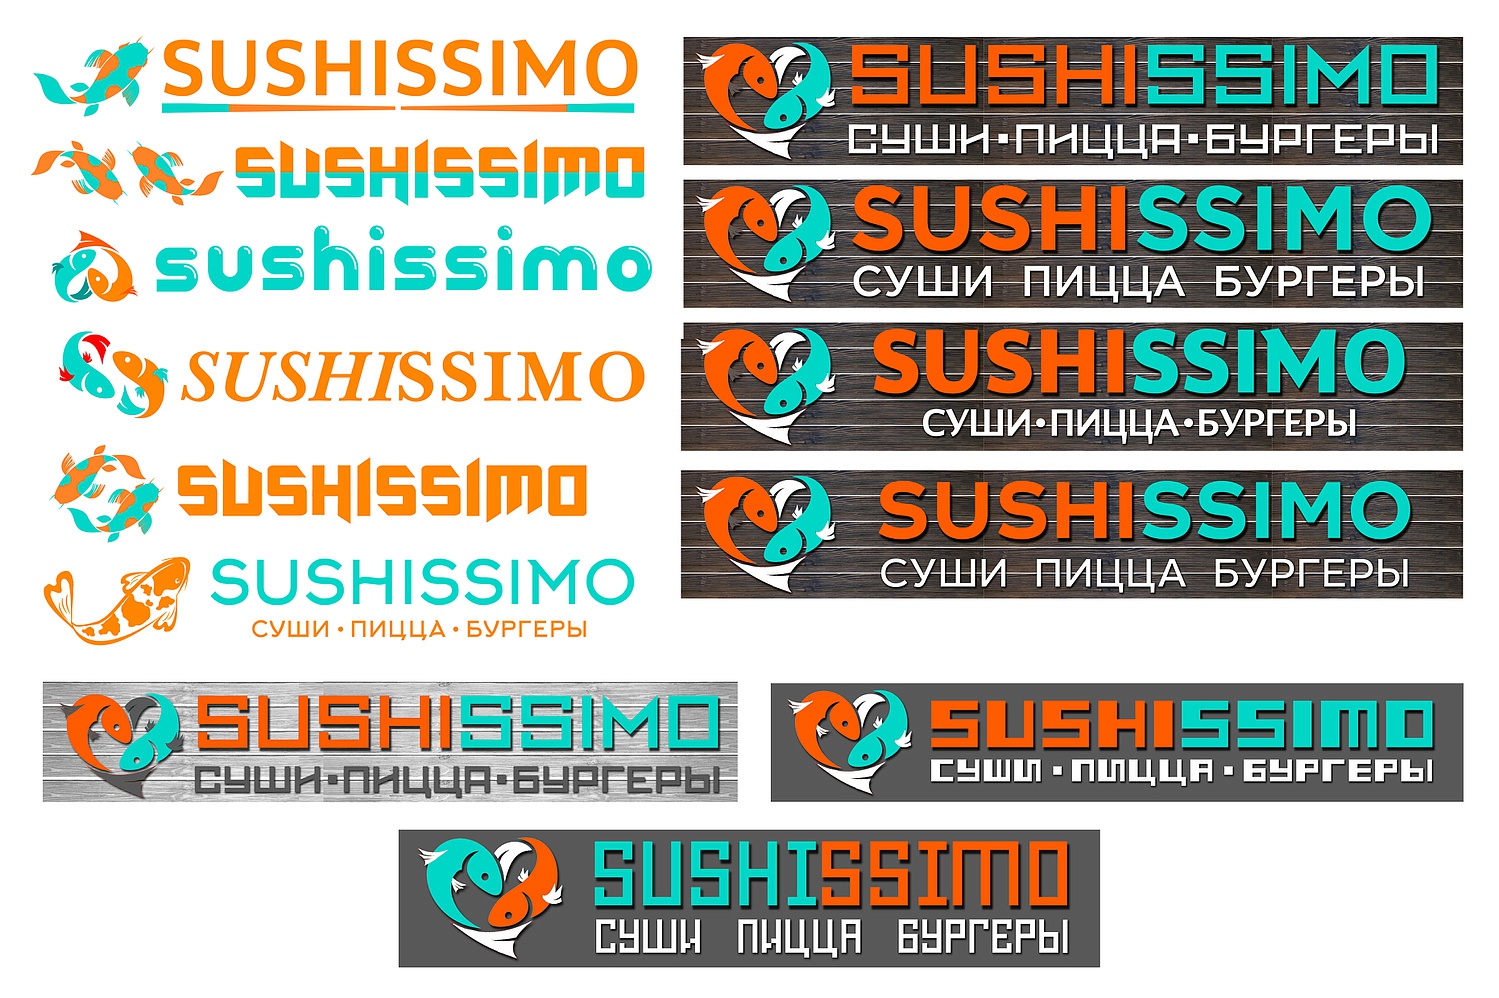 Разработка фирменного стиля и изготовление рекламы для магазина суши и роллов SUSHISSIMO